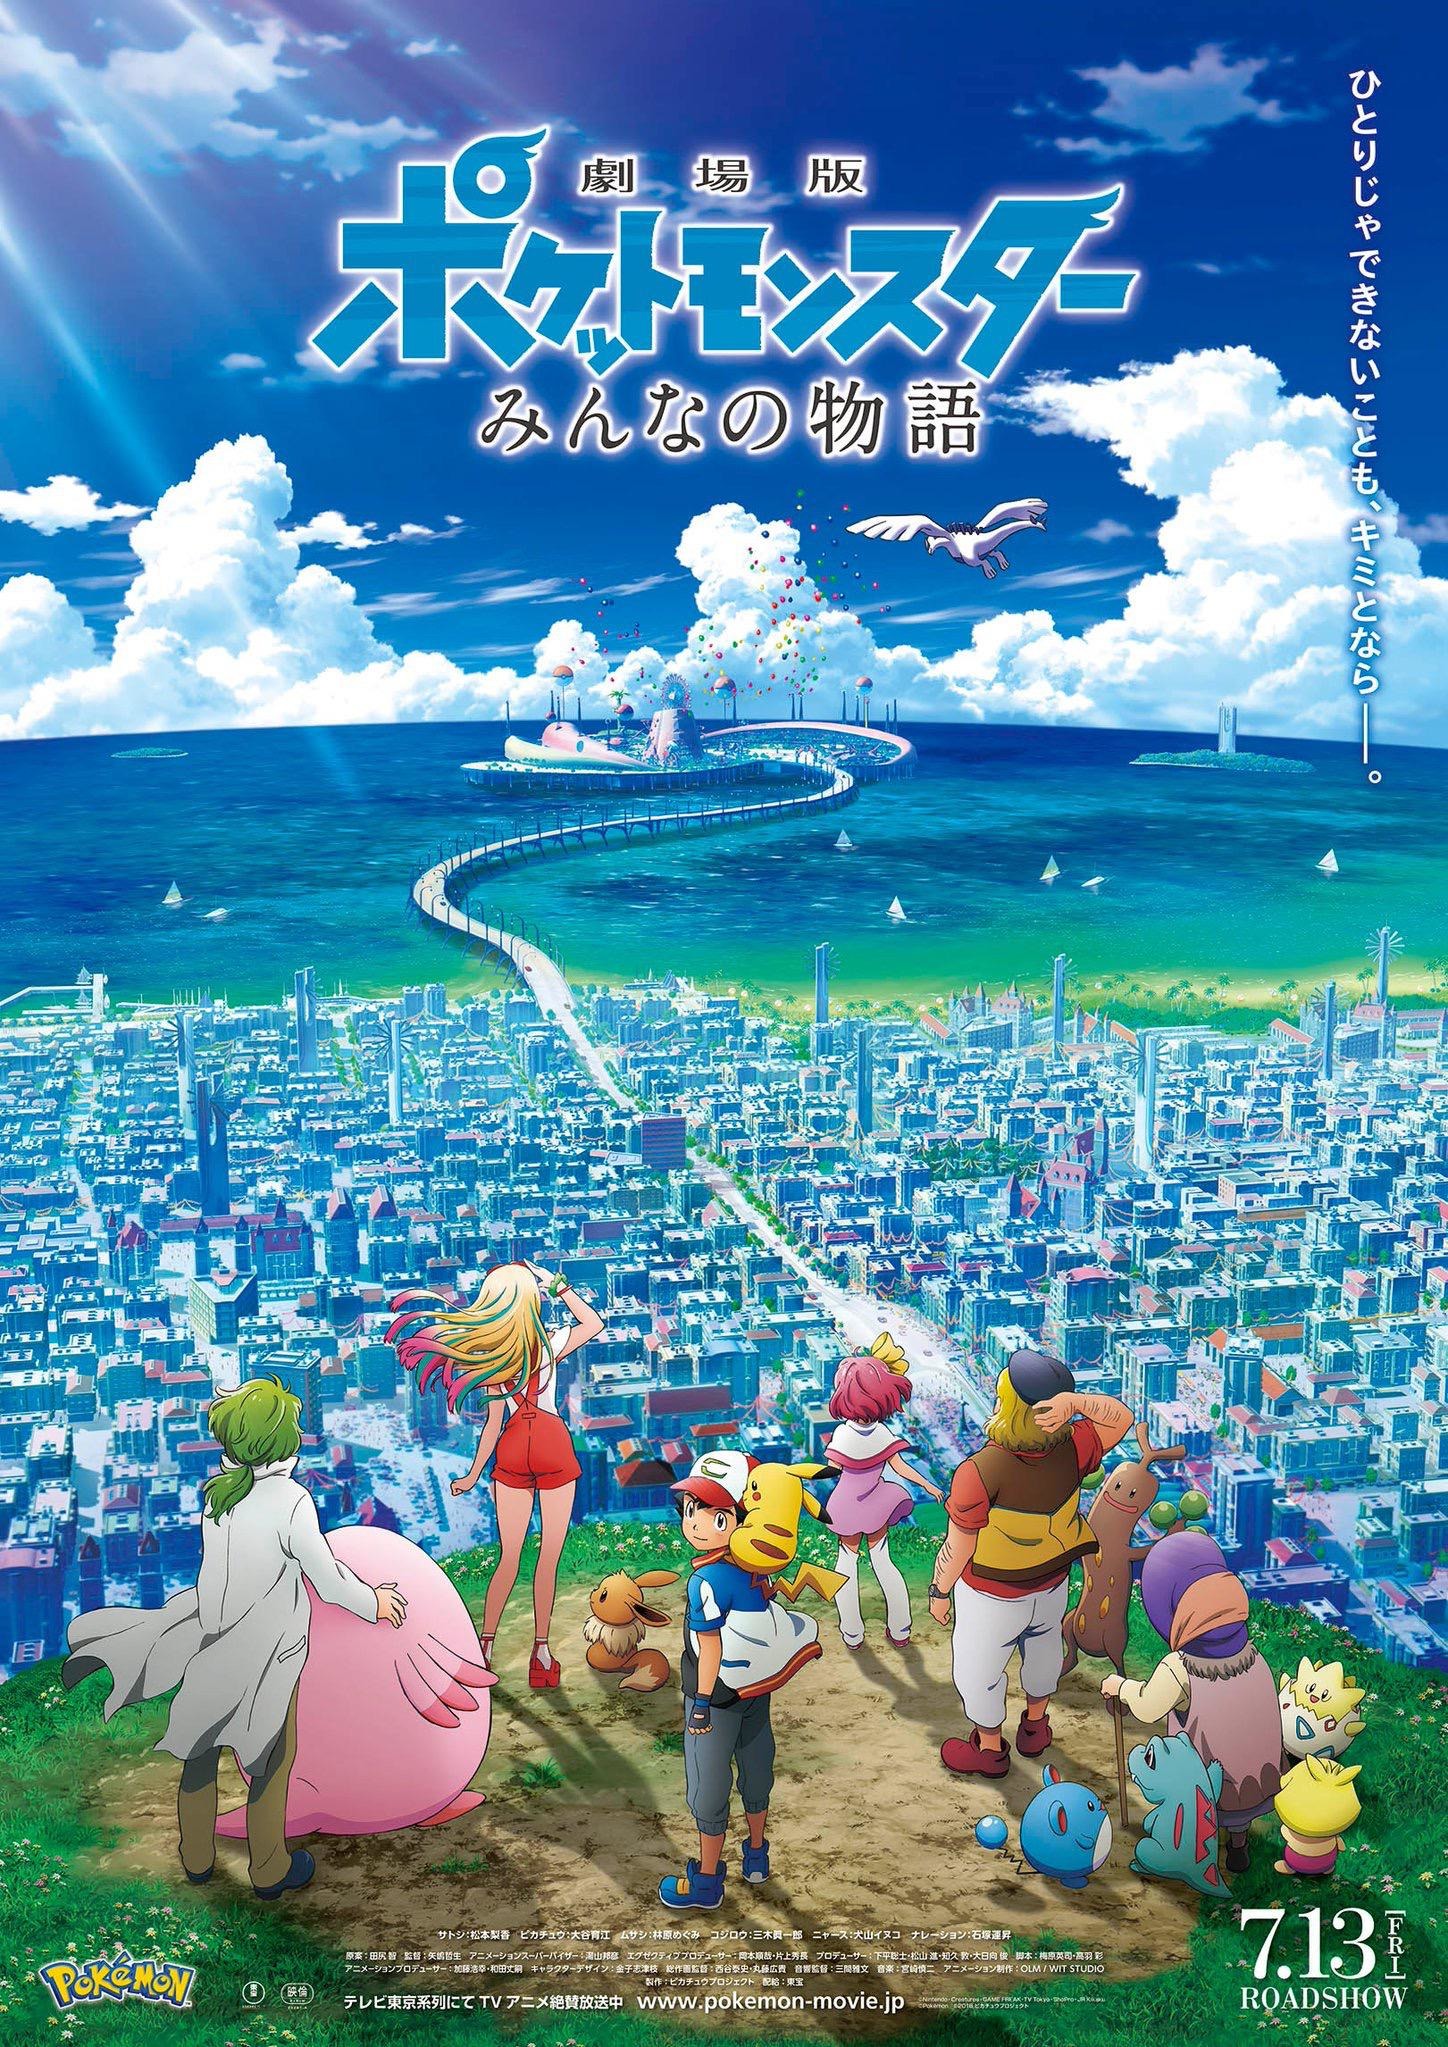 Mega Sized Movie Poster Image for Gekijouban Poketto monsutâ: Minna no Monogatari (#1 of 2)